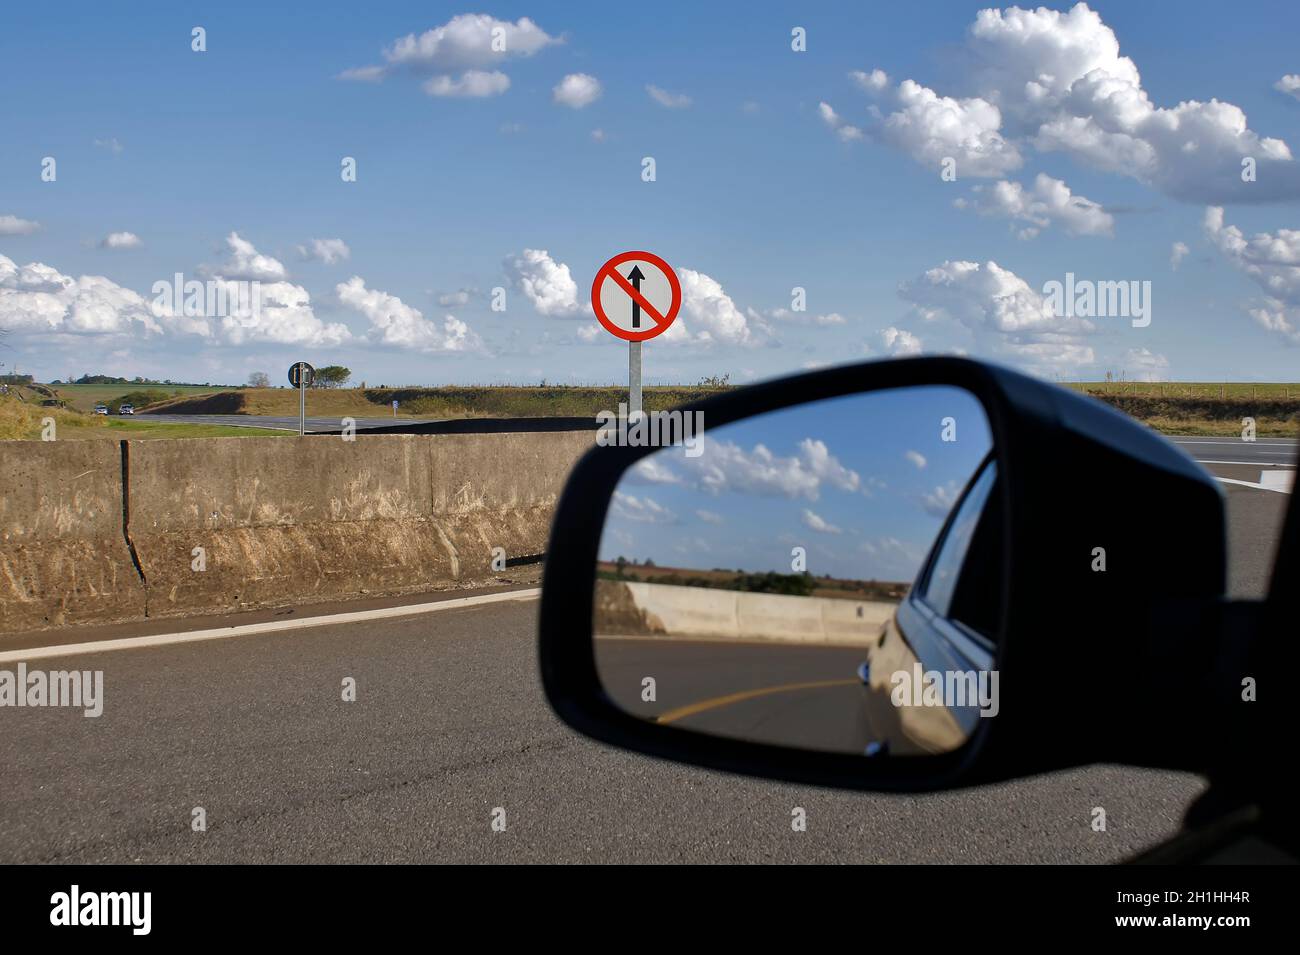 Señal prohibida para seguir recto, en un retorno desde una autopista en São Paulo, Brasil. Foto de stock